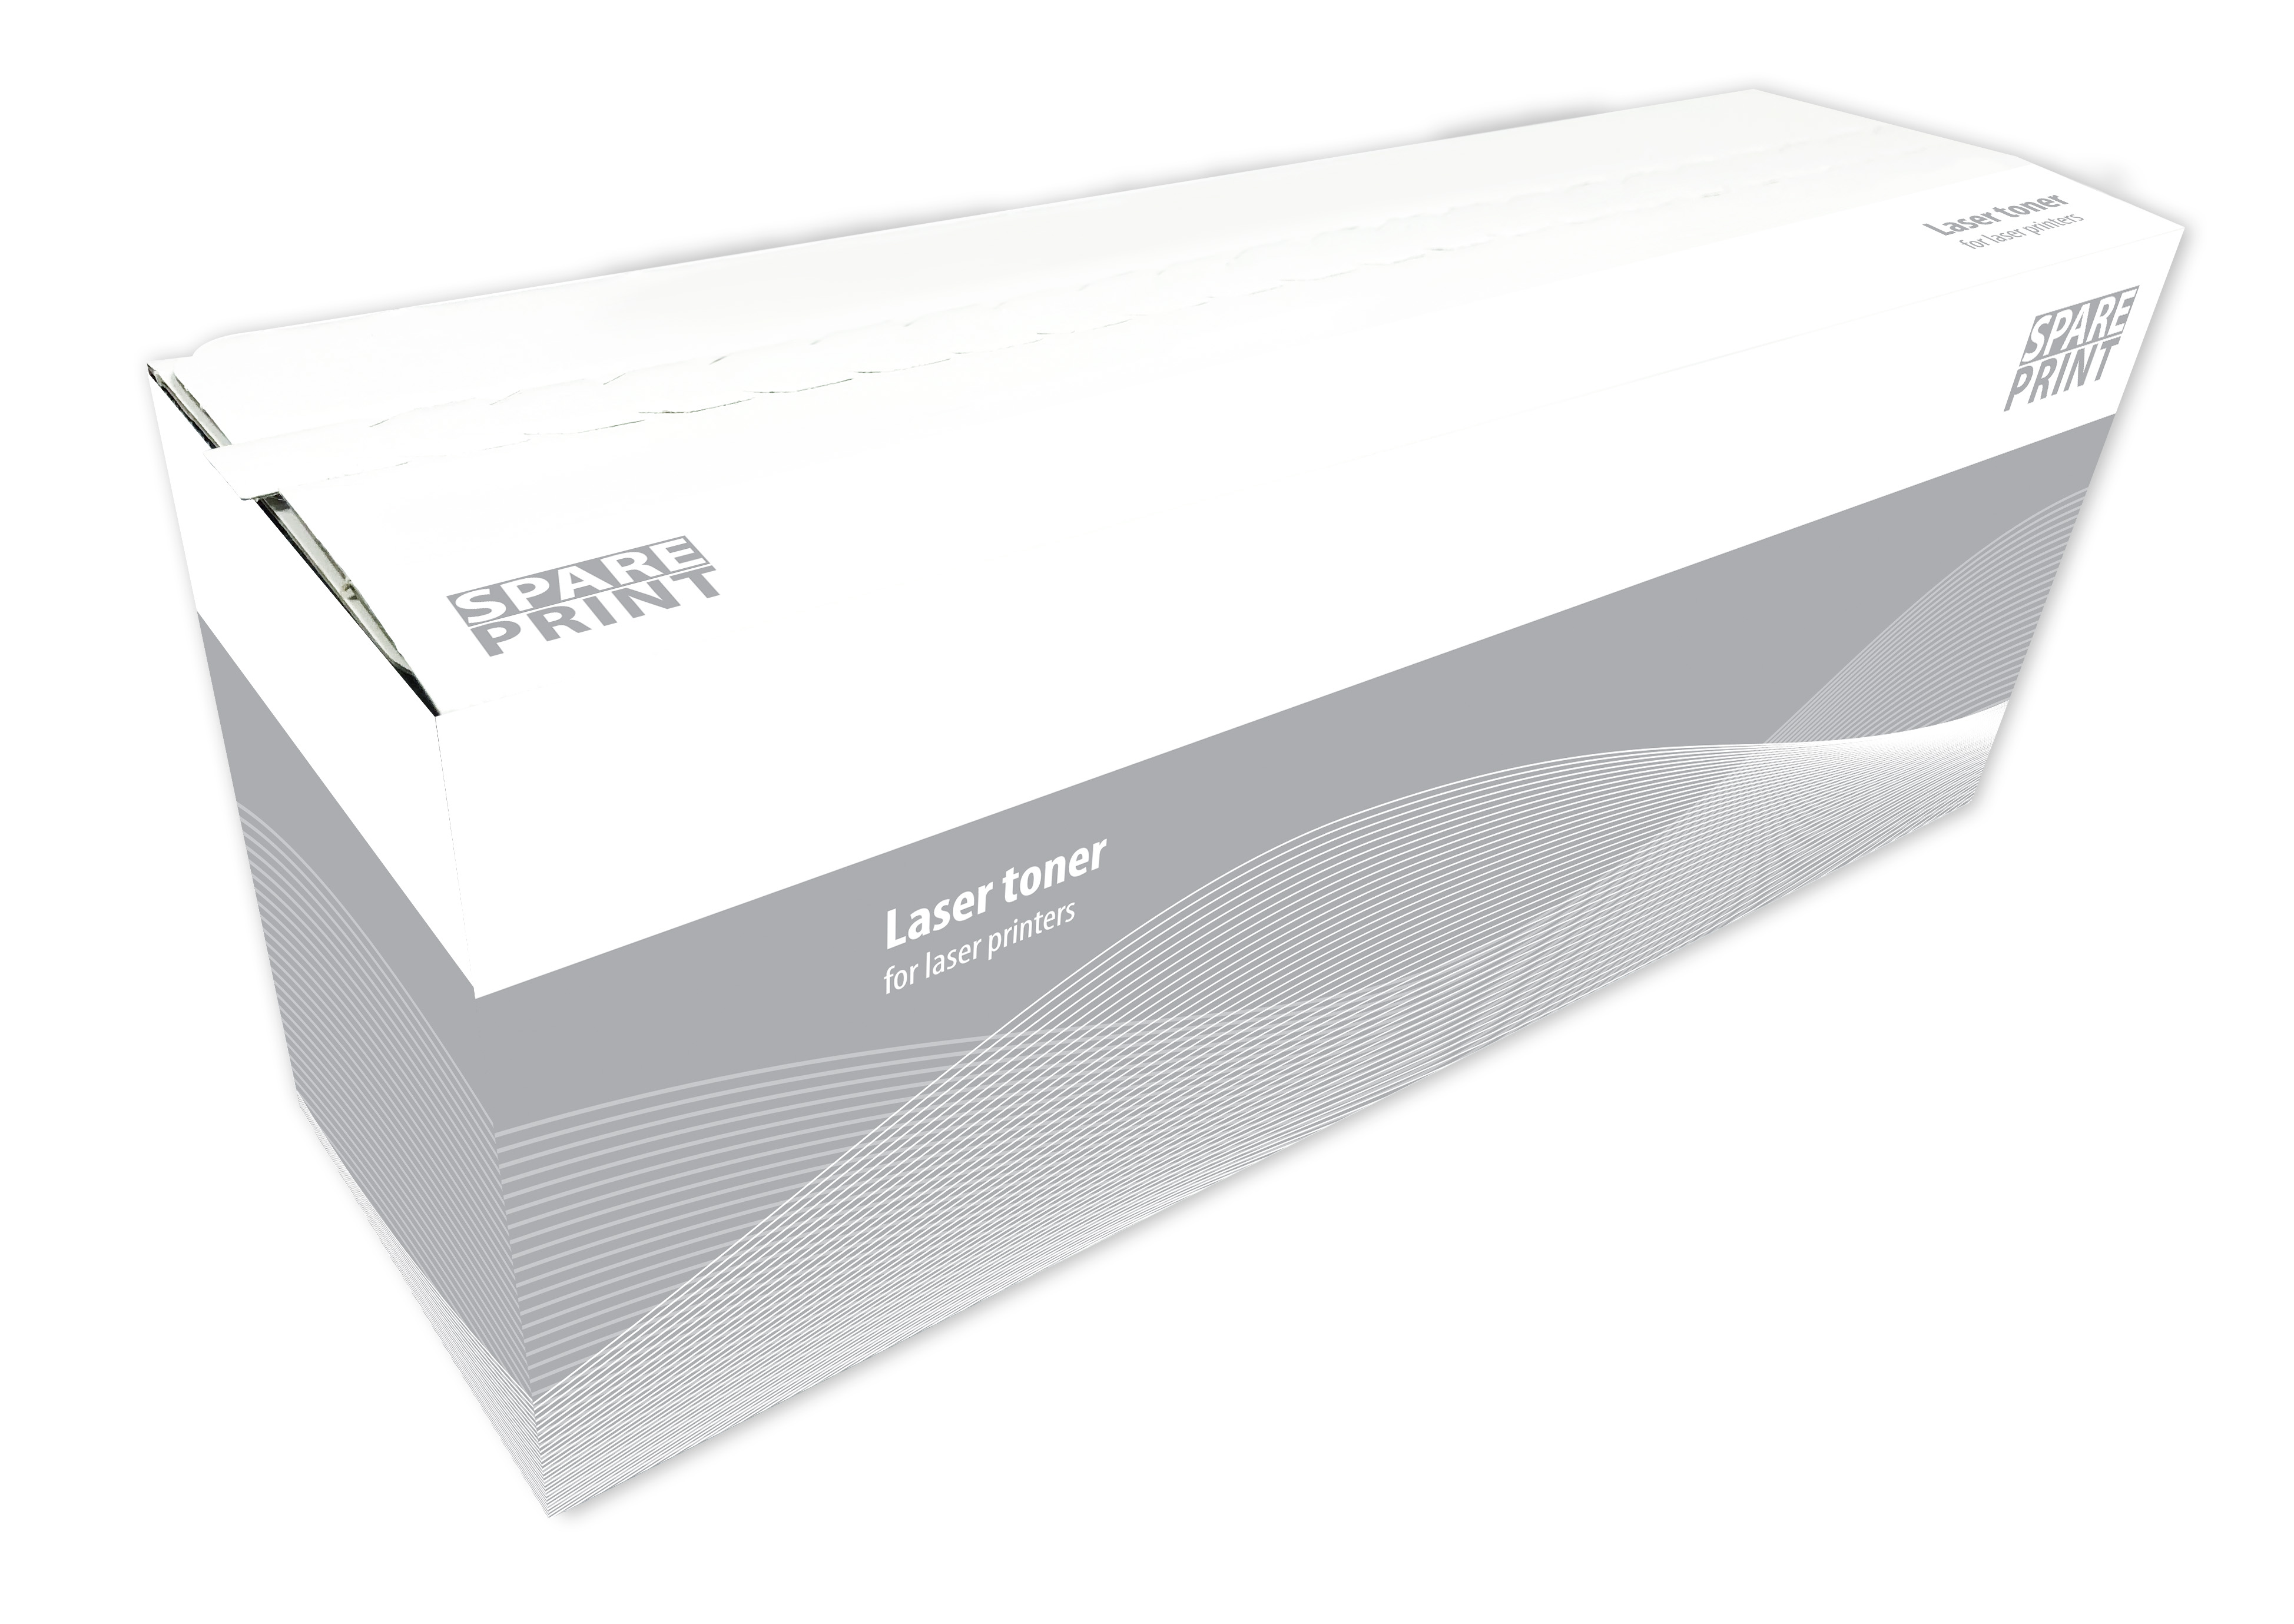 SPARE PRINT kompatibilní toner MLT-D101S Black pro tiskárny Samsung